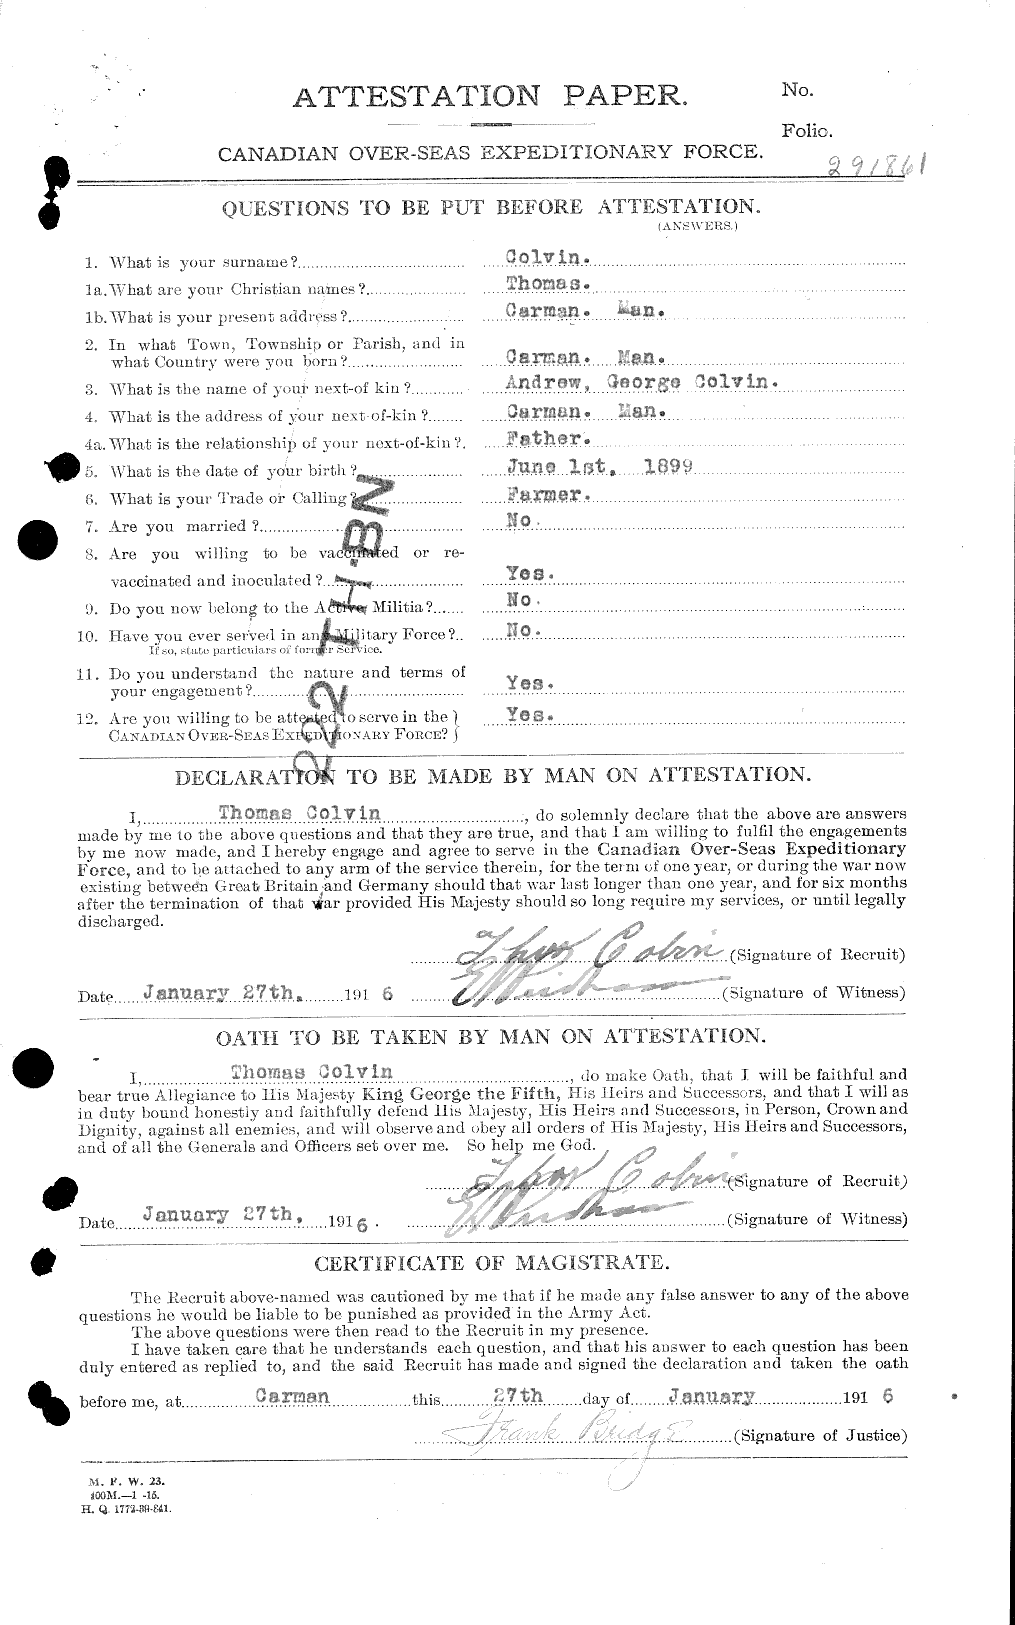 Dossiers du Personnel de la Première Guerre mondiale - CEC 043793a